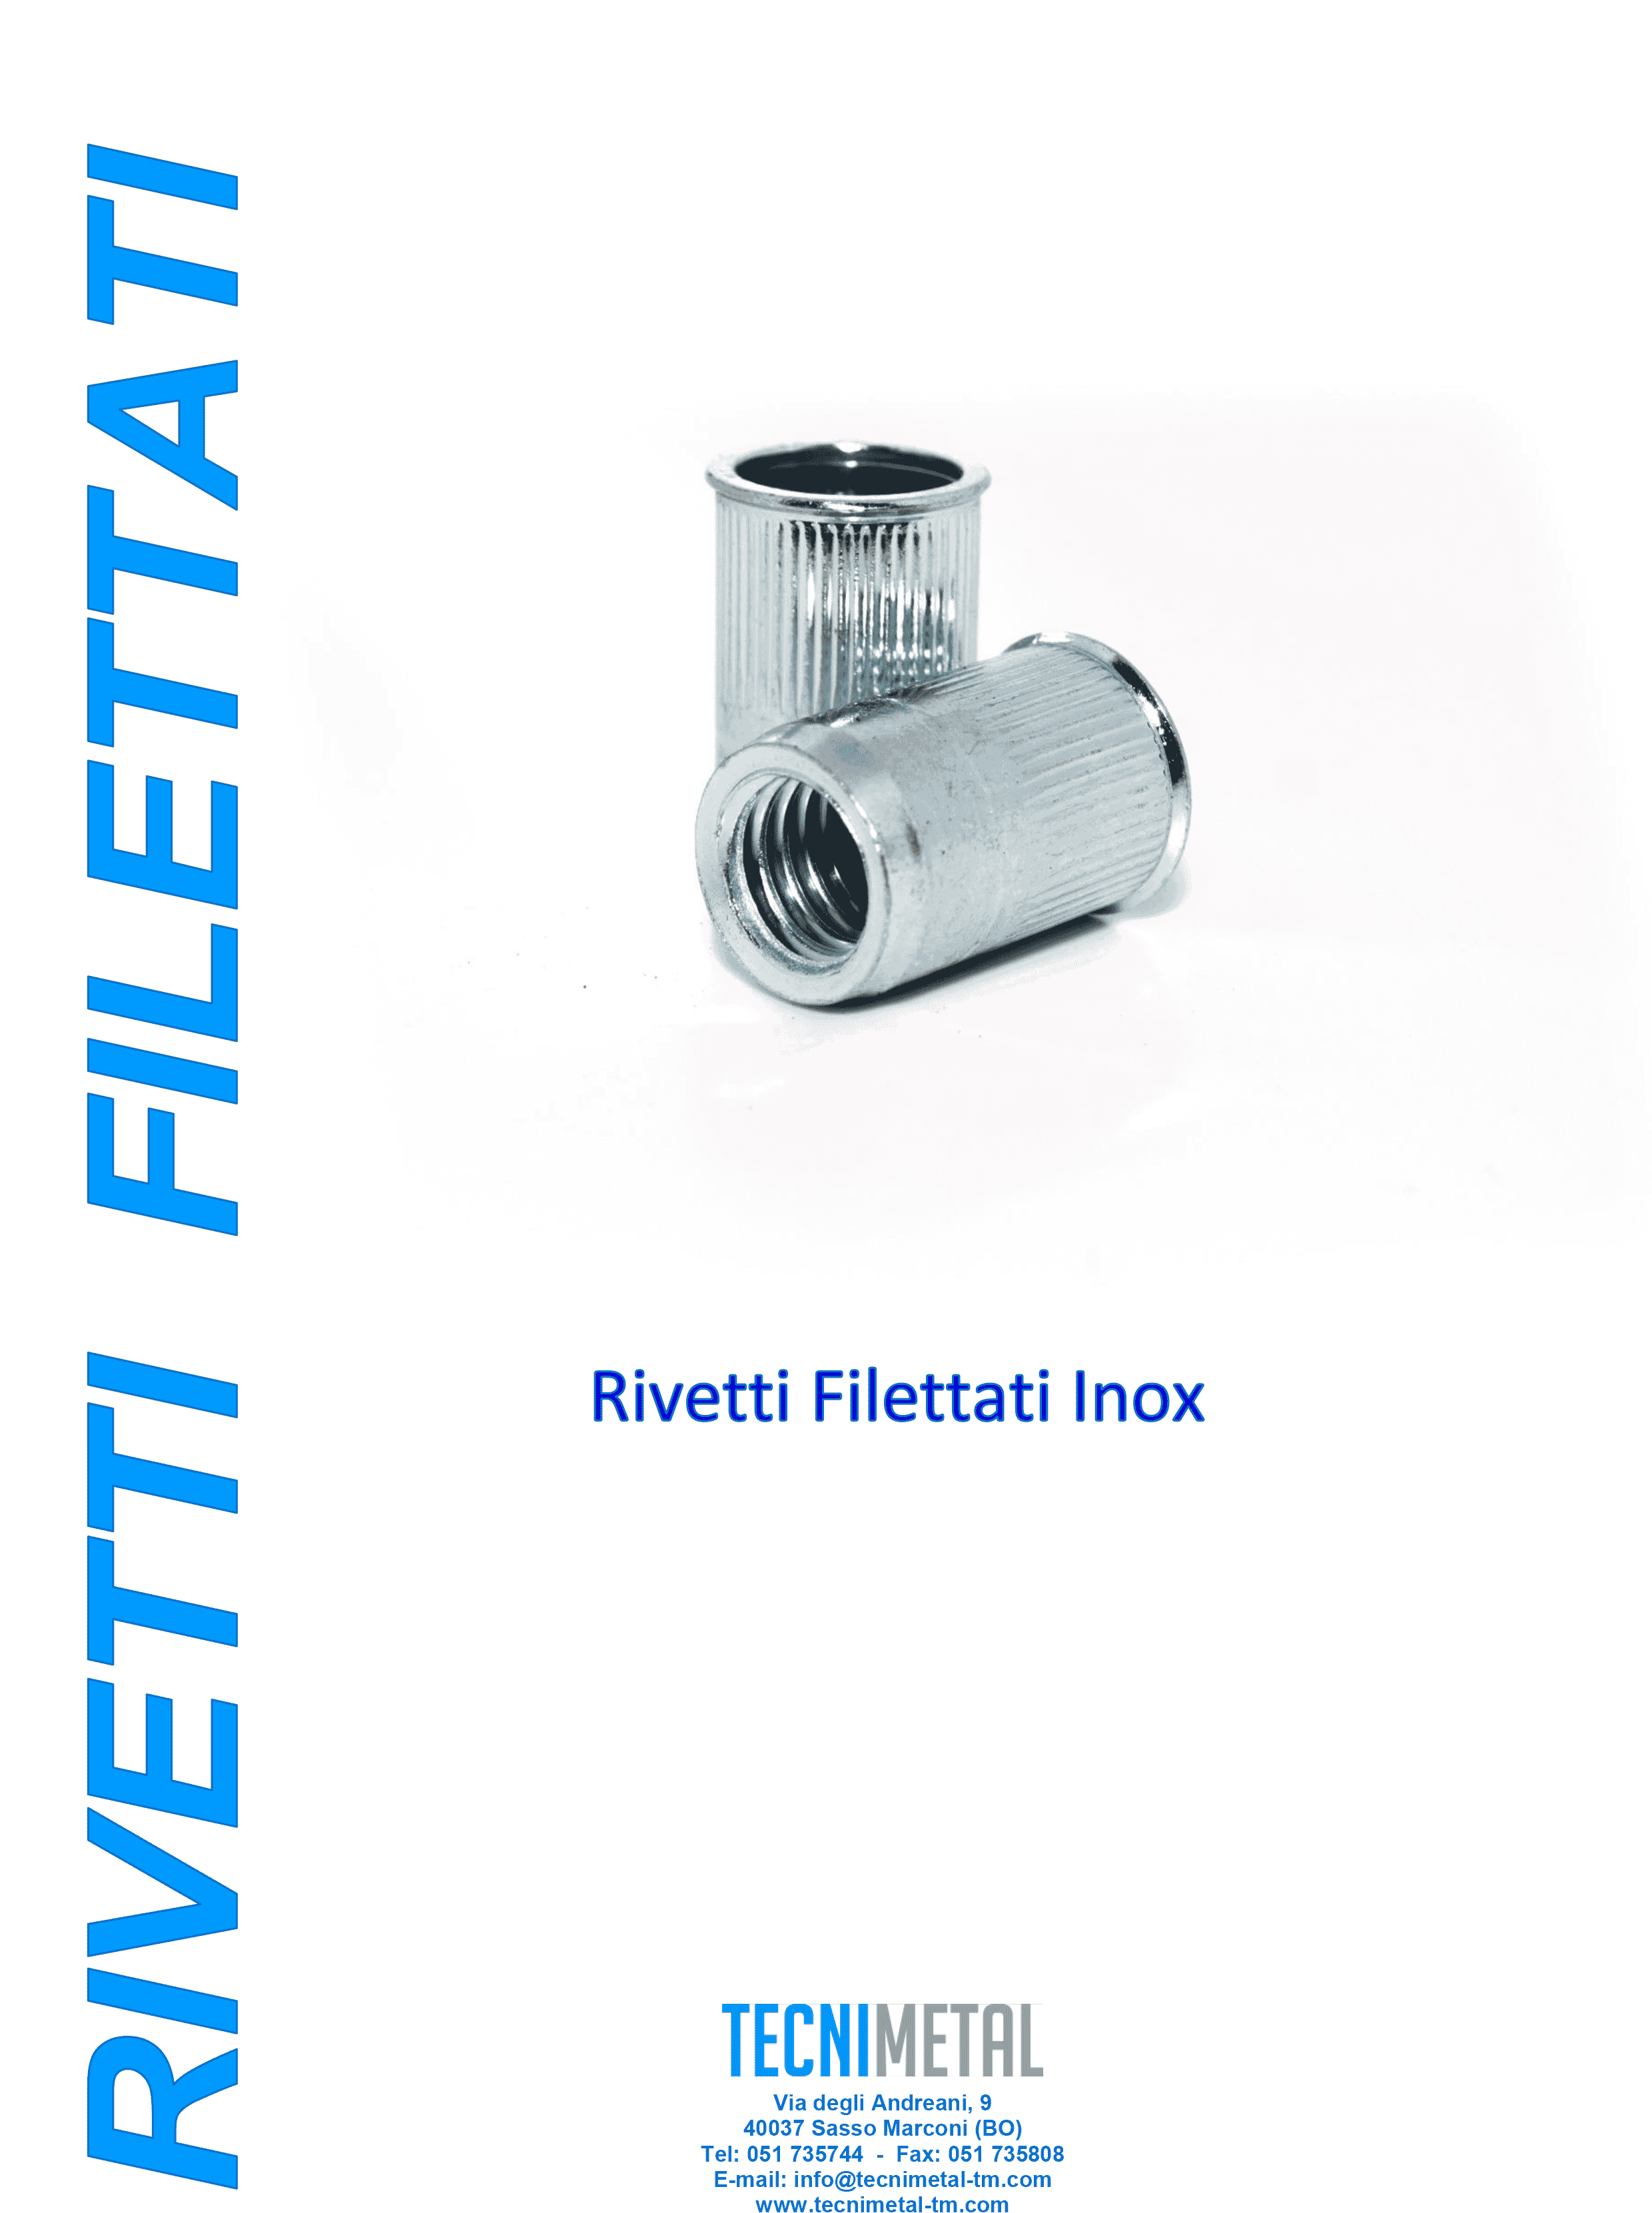 Rivetti Filettati - Tecnimetal